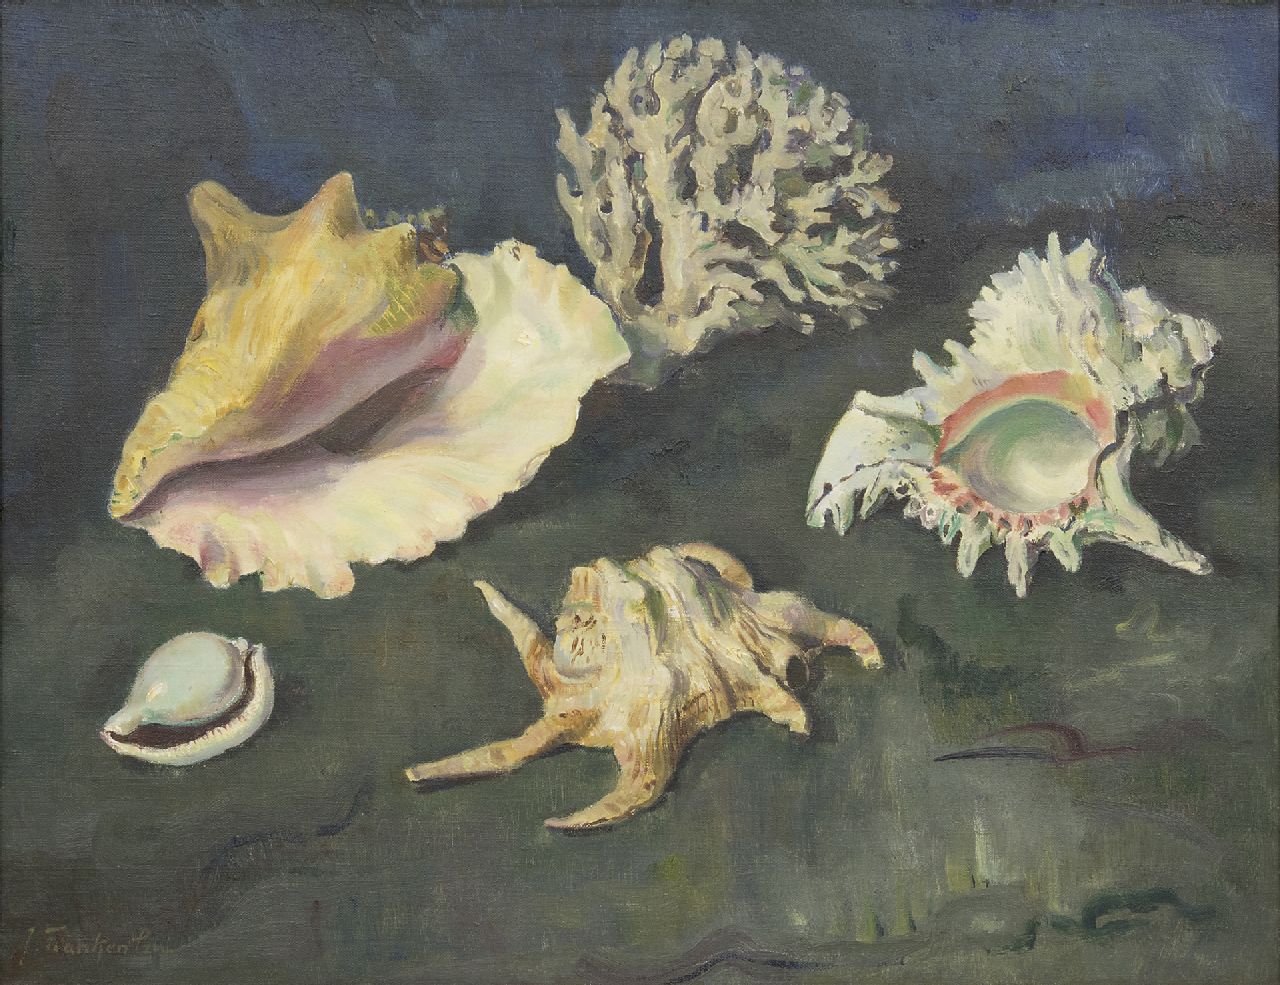 Franken J.P.J.  | Joannes Petrus Josephus 'Jan' Franken, Schelpen en koraal, olieverf op doek 50,2 x 65,2 cm, gesigneerd linksonder